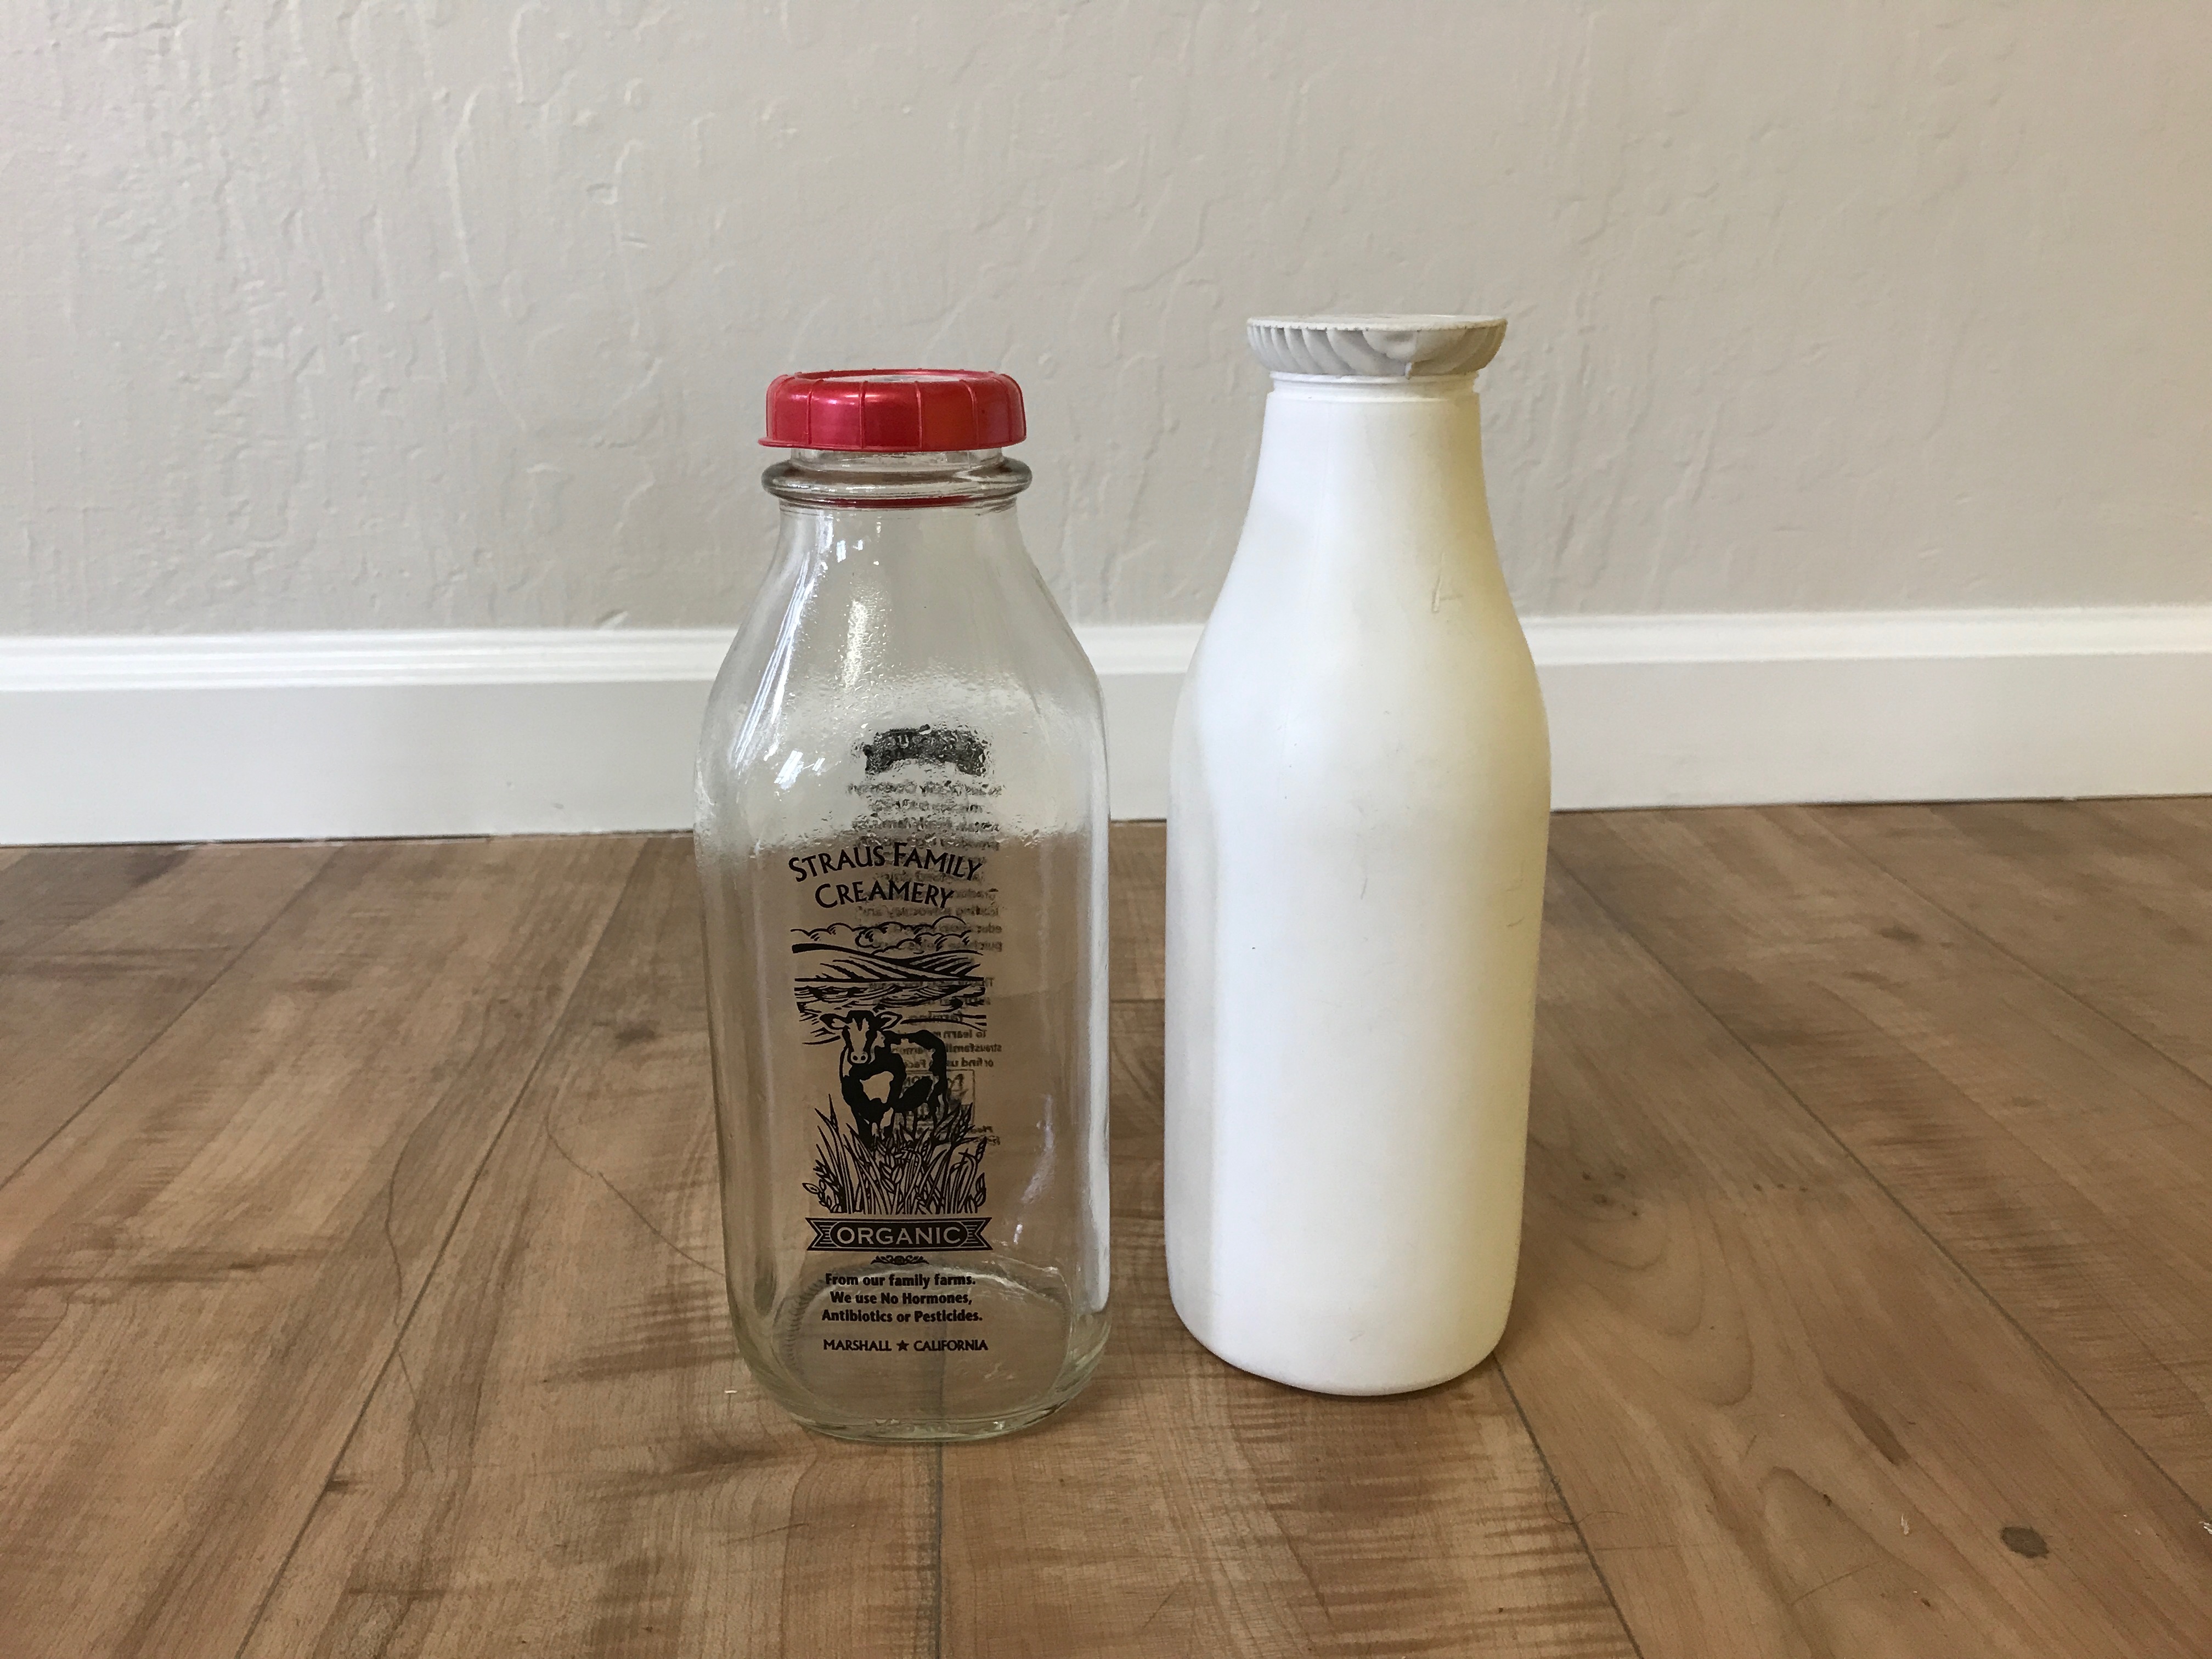 milk bottles